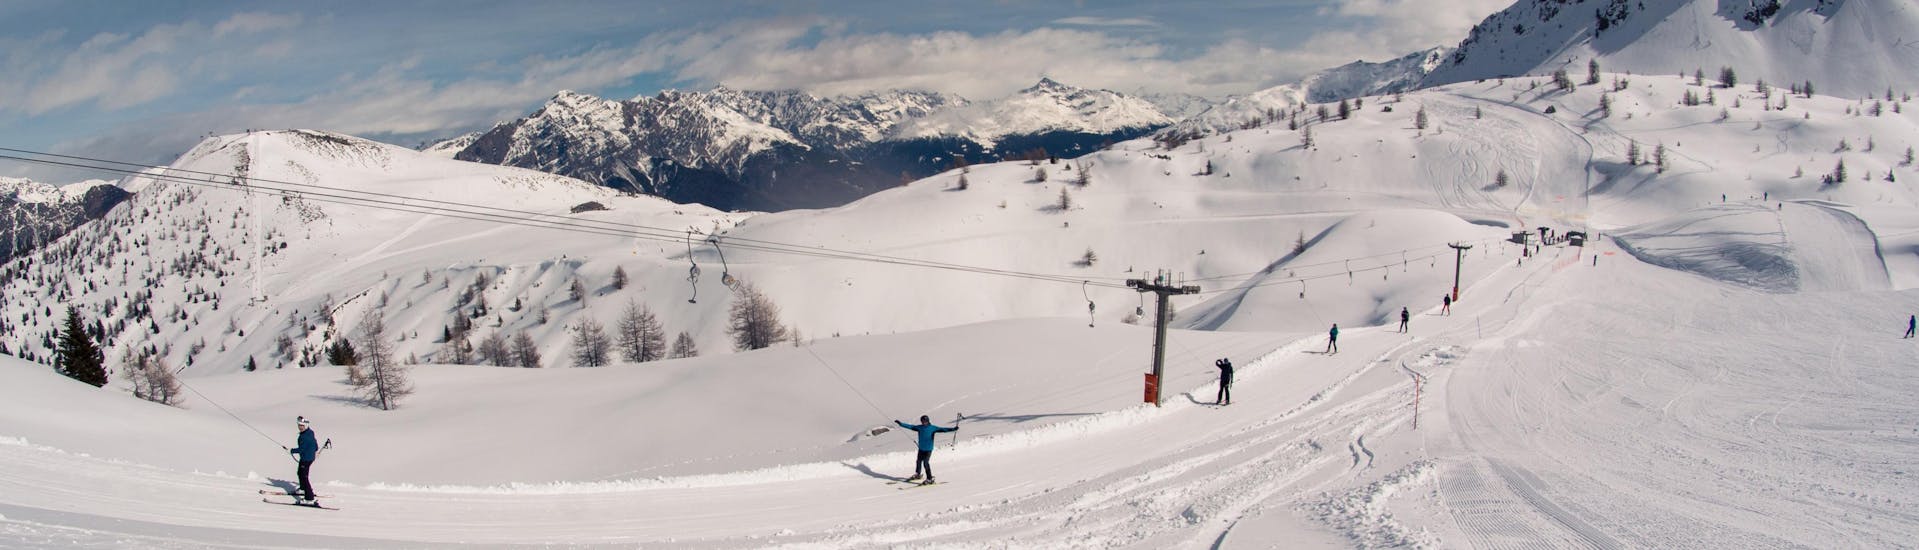 Skiërs gaan de piste op met een skilift in Bormio, Italië.